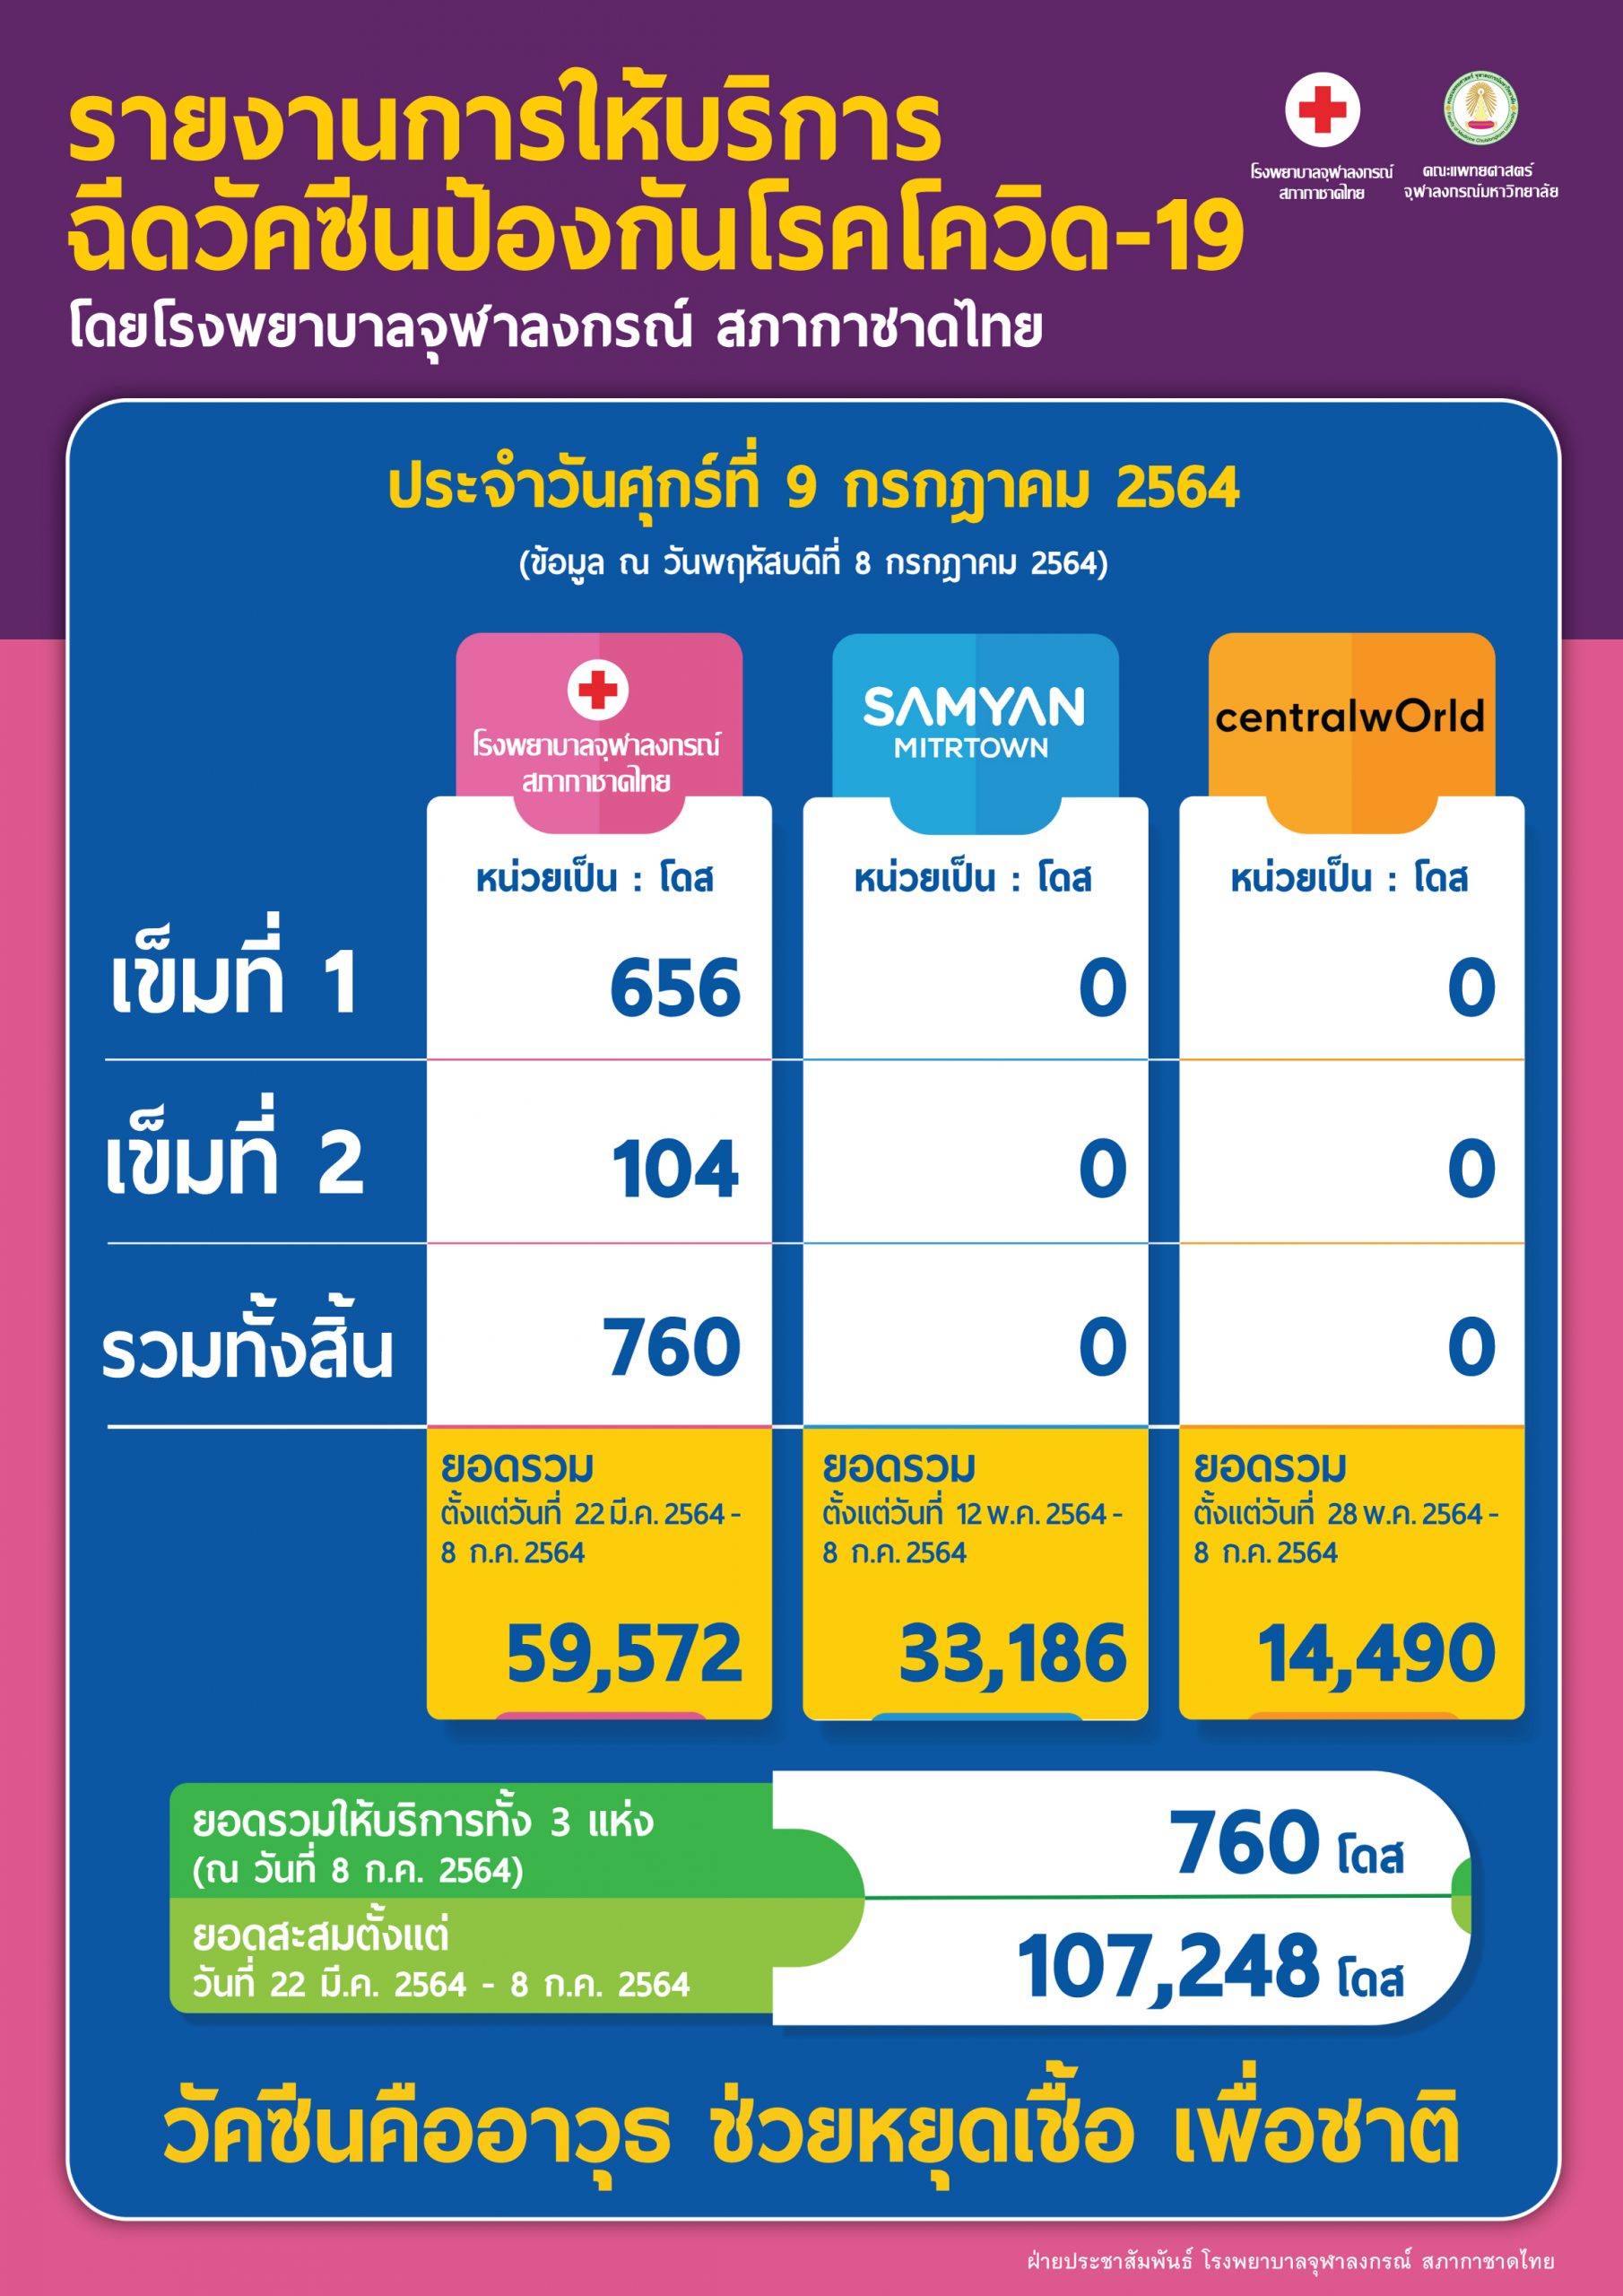 รายงานการให้บริการฉีดวัคซีนป้องกันโรคโควิด-19 โดยโรงพยาบาลจุฬาลงกรณ์ สภากาชาดไทย ประจำวันศุกร์ที่ 9 กรกฎาคม 2564